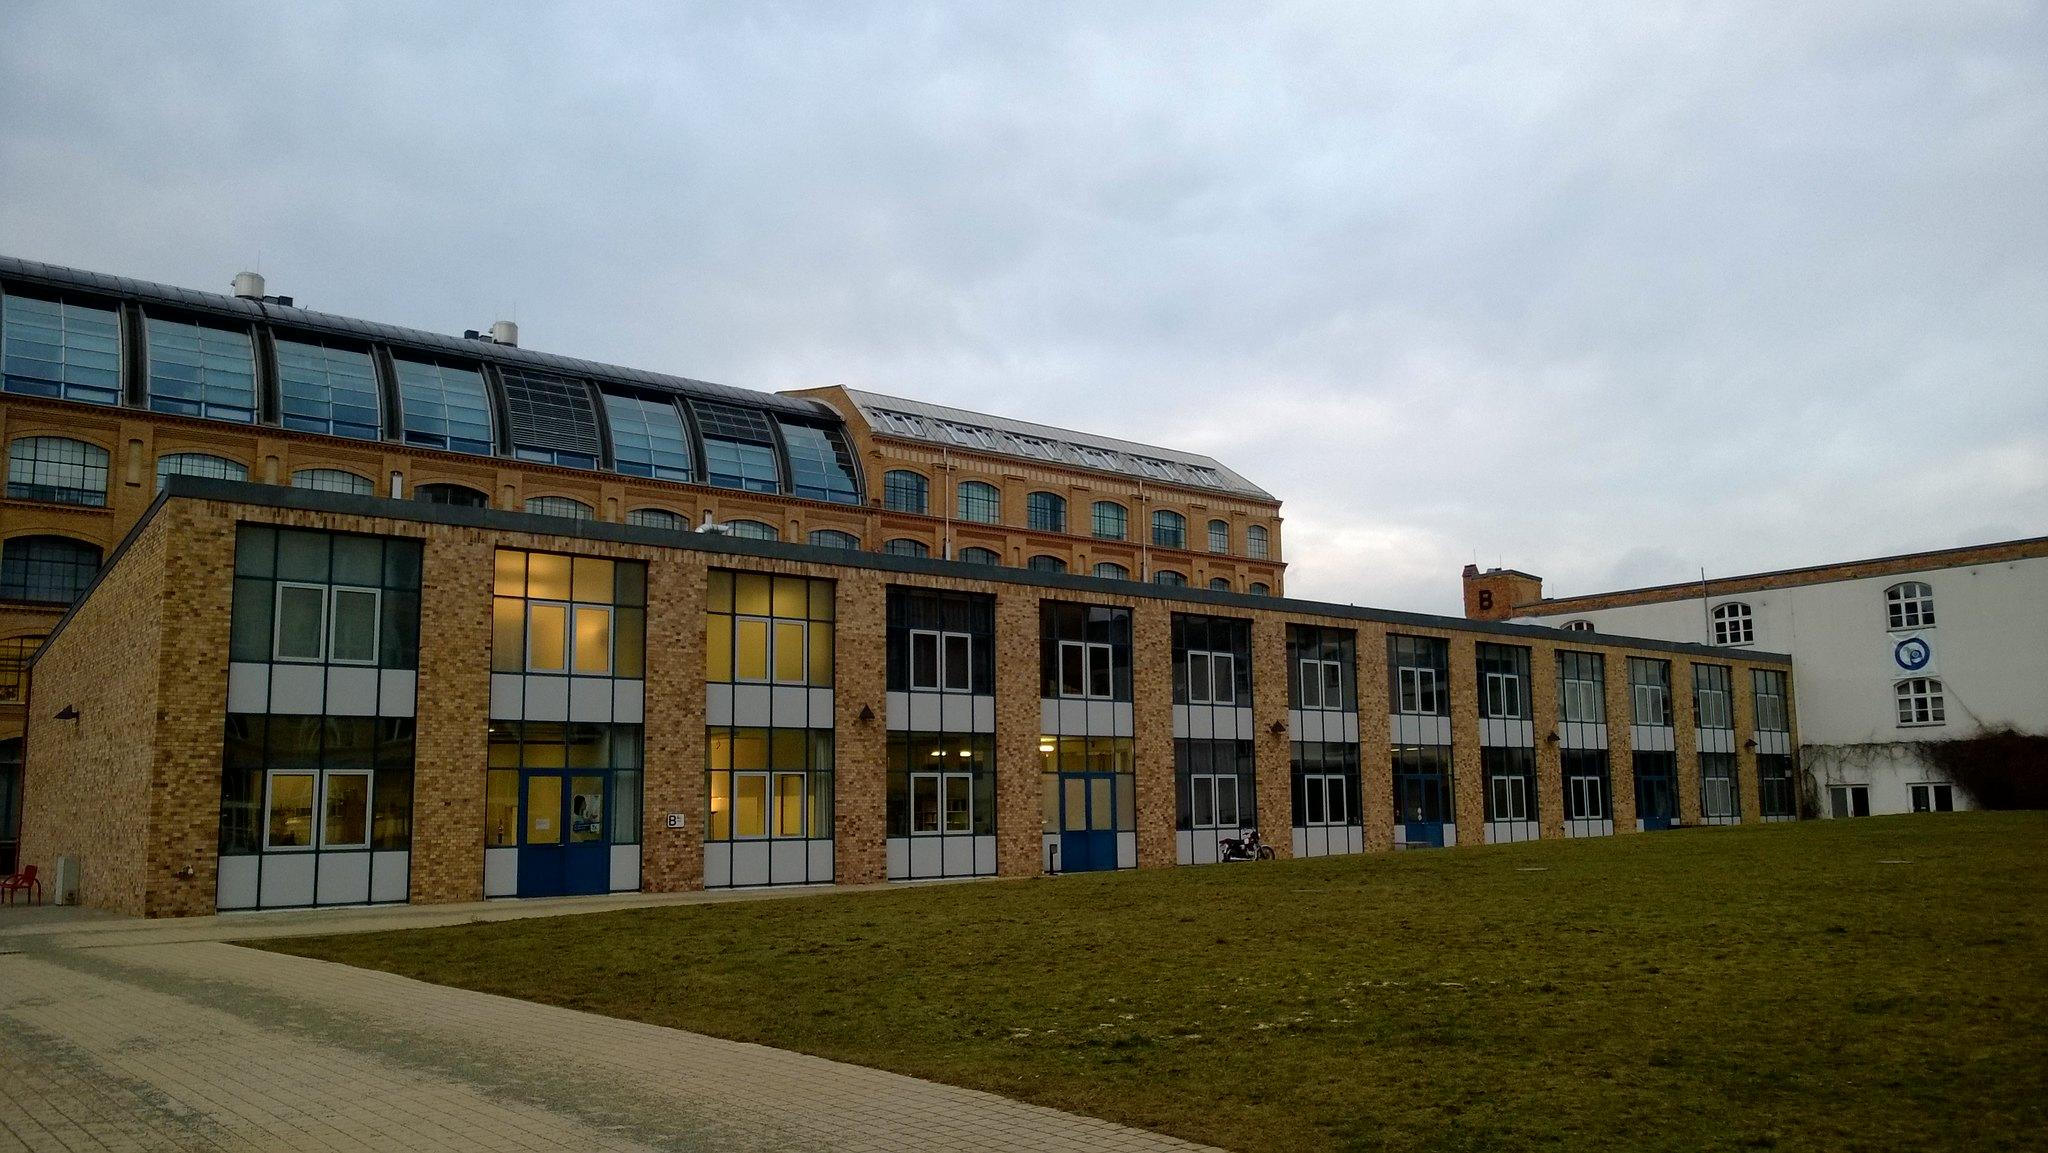 Βερολίνο - Πανεπιστήμιο Εφαρμοσμένων Επιστημών Μηχανικών και Οικονομικών του Βερολίνου5b4